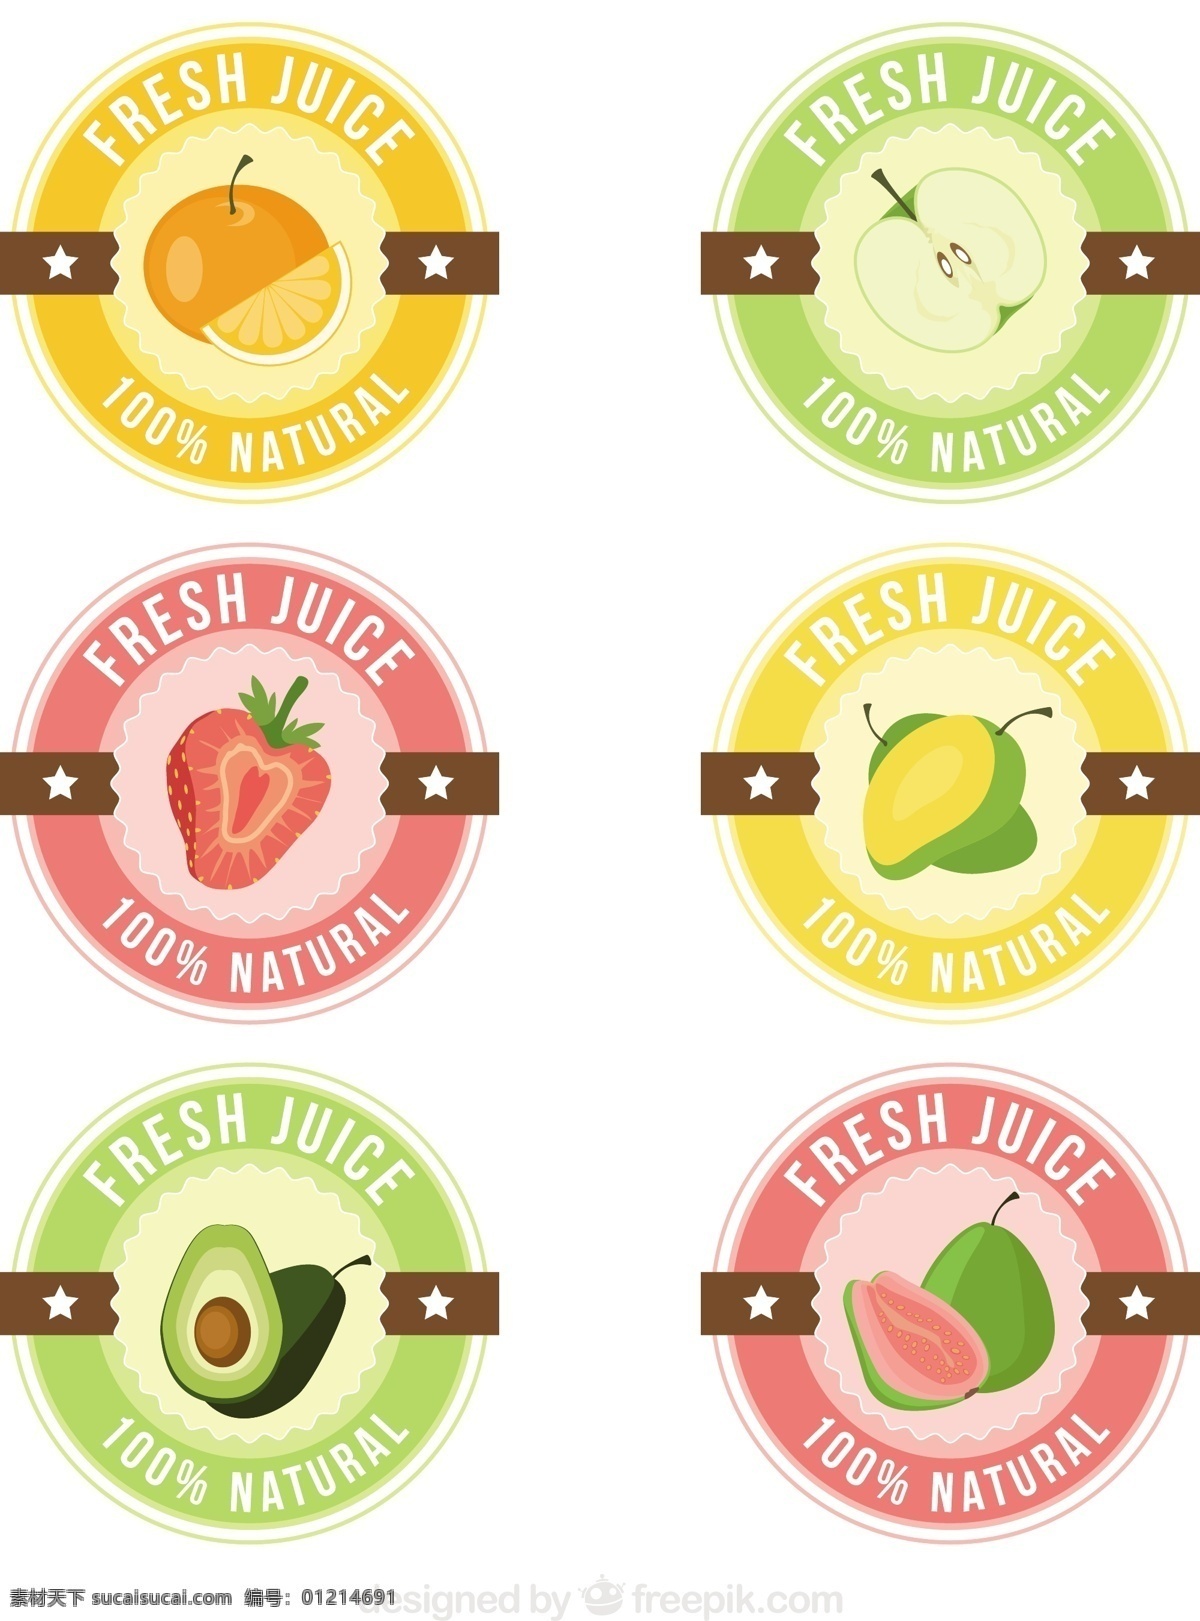 鲜榨 果汁 贴 柔和 颜色 集合 食品 标签 夏季 水果 橙 热带 苹果 平板 饮料 圆 天然 粉彩 健康 平面设计 草莓